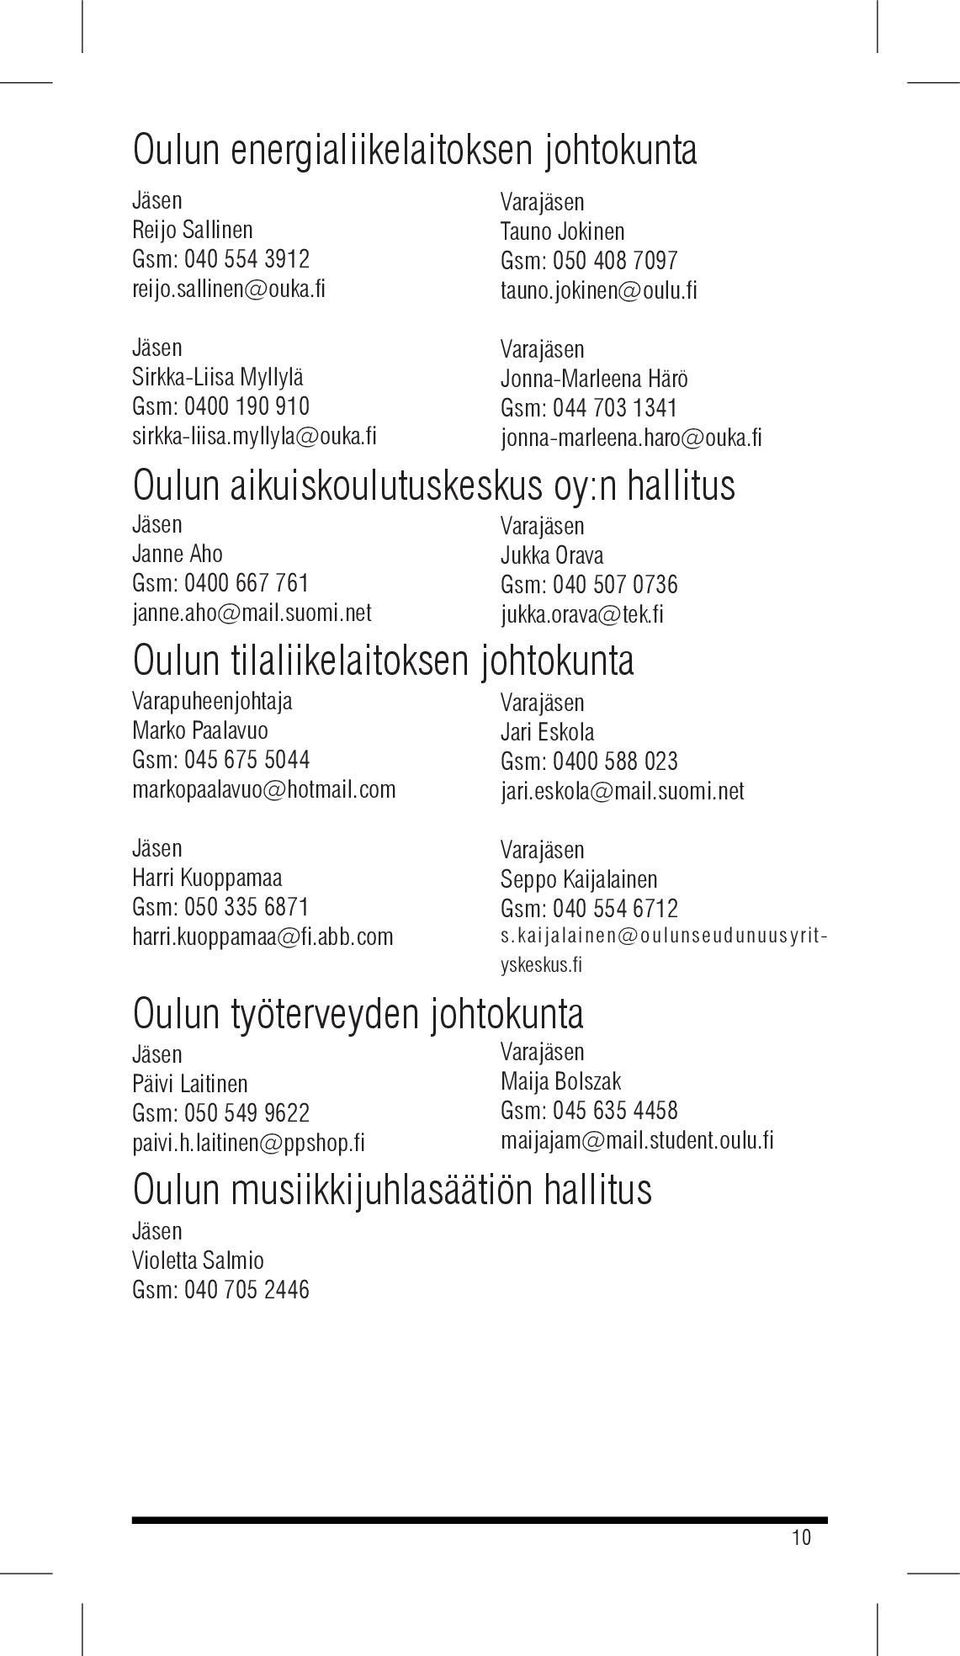 com Jonna-Marleena Härö Gsm: 044 703 1341 jonna-marleena.haro@ouka.fi Oulun aikuiskoulutuskeskus oy:n hallitus Jukka Orava Gsm: 040 507 0736 jukka.orava@tek.